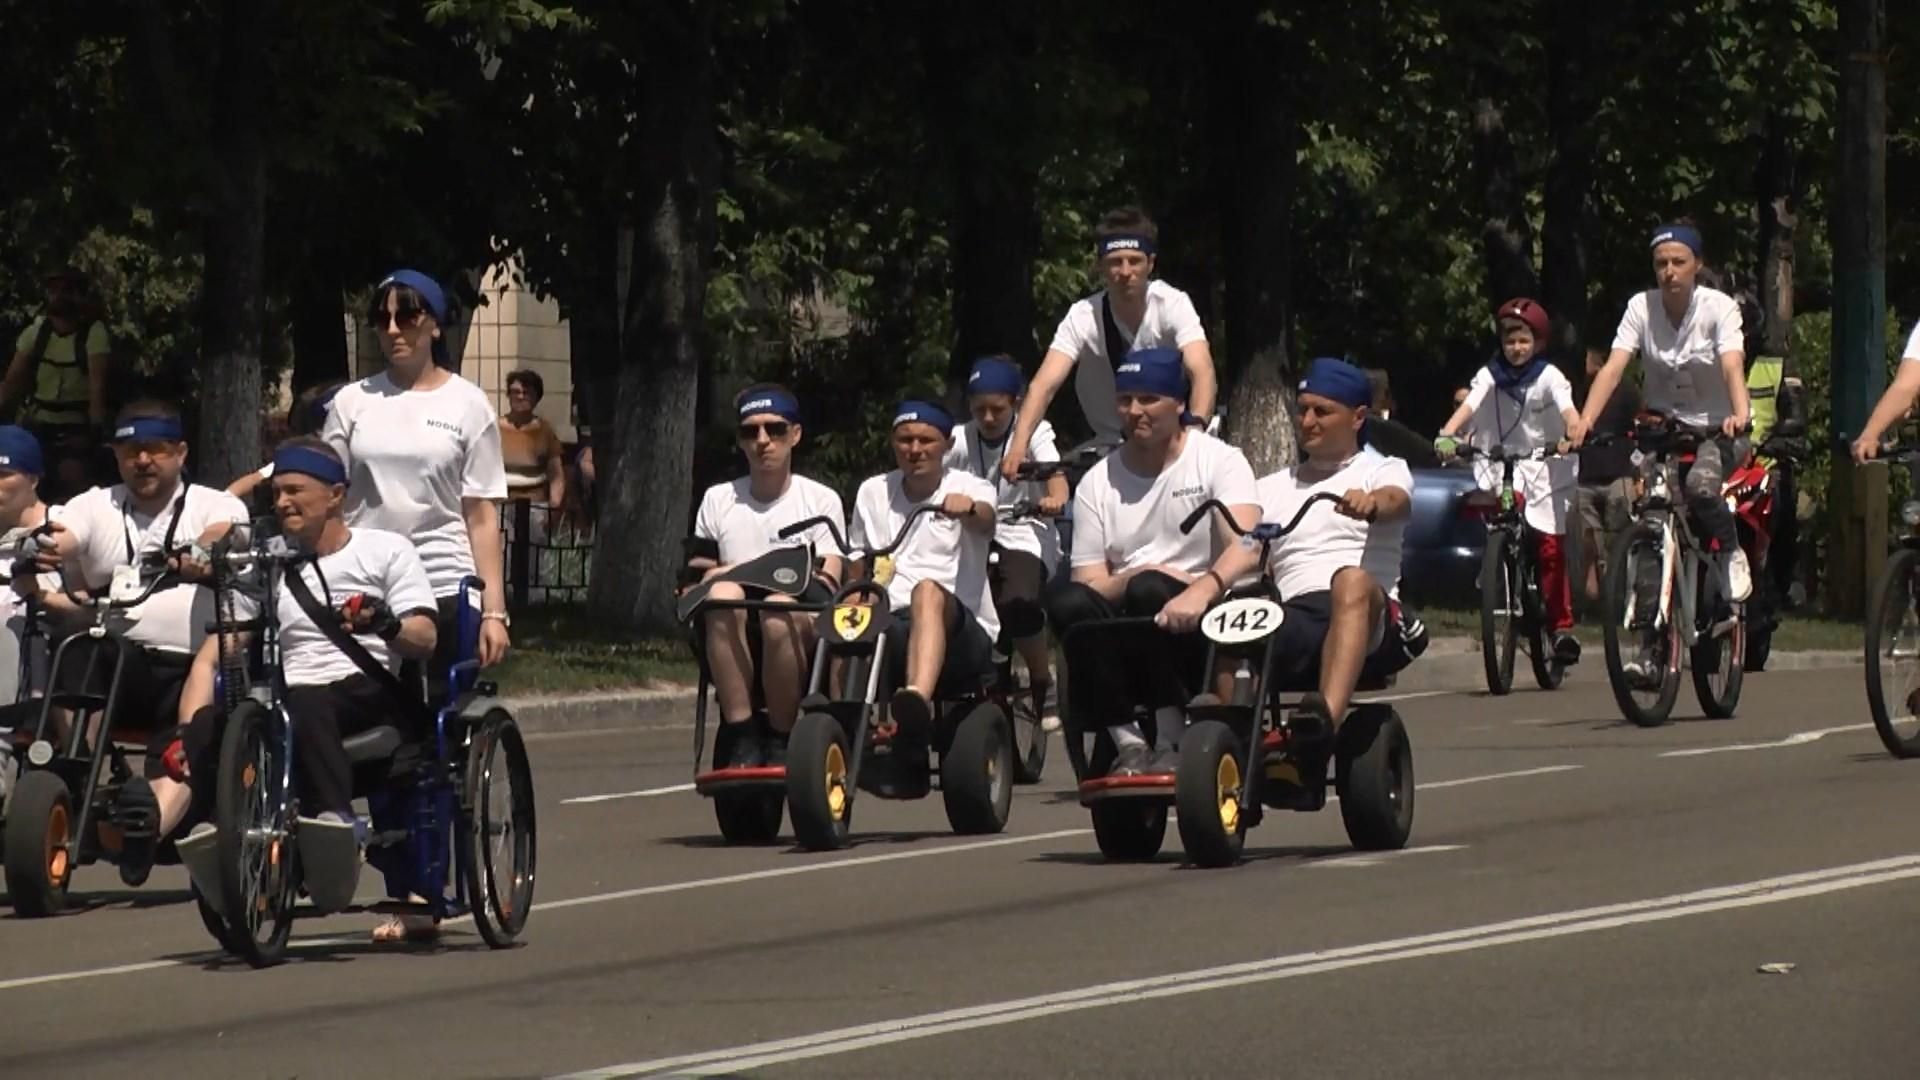 Ветерани, яких скалічила війна з Росією, взяли участь у масштабному велопробізі: фото